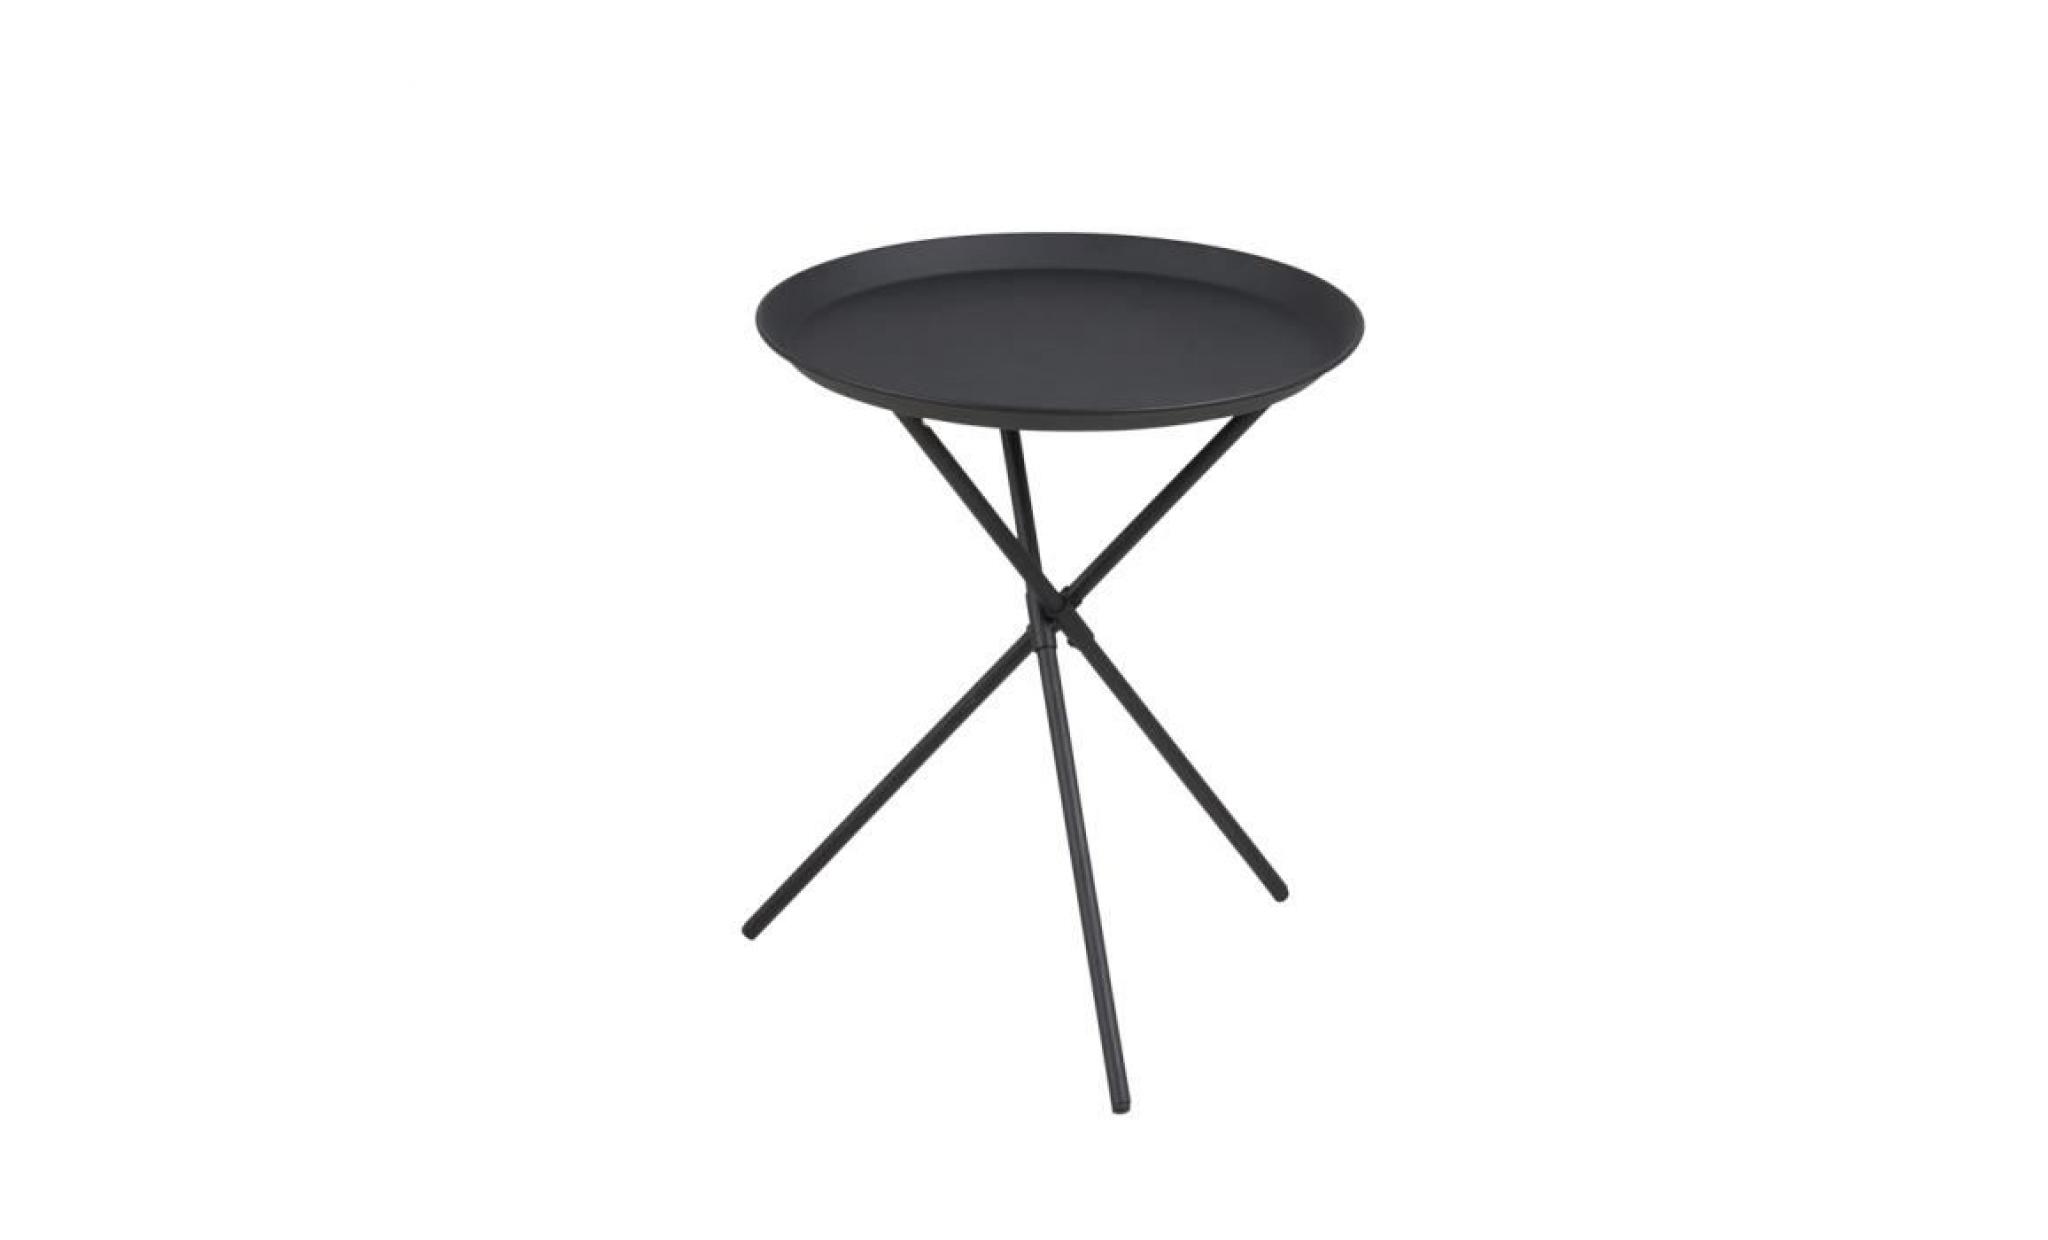 table basse / table d’appoint   sparky   38,5 cm   blanc   métal revêtu de poudre   style scandinave   style industriel pas cher